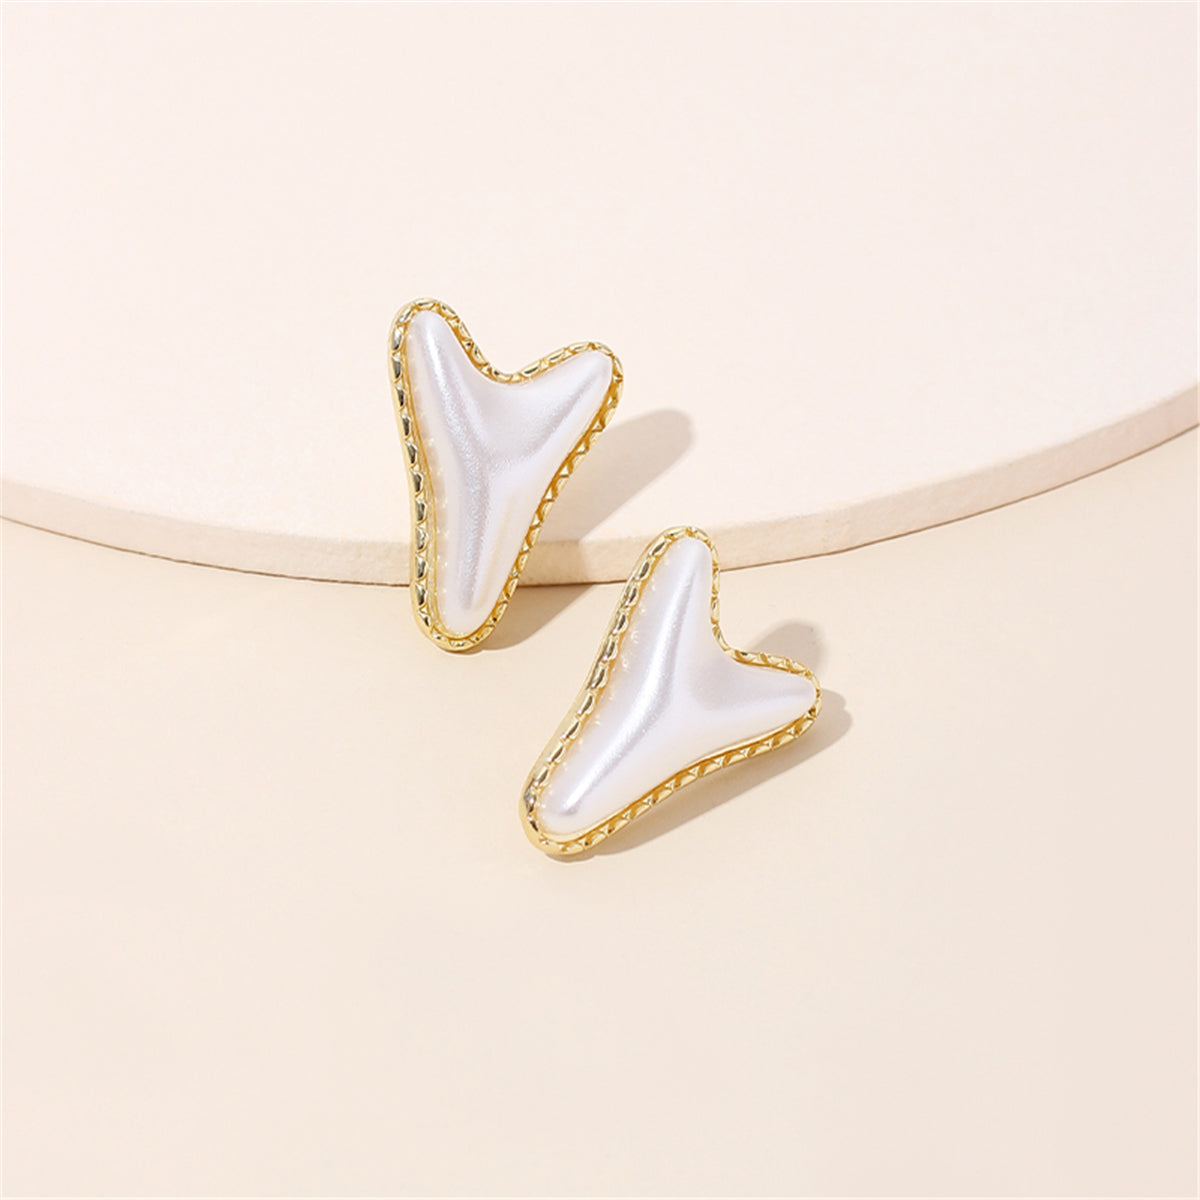 Pearl & 18K Gold-Plated Arrow Stud Earrings